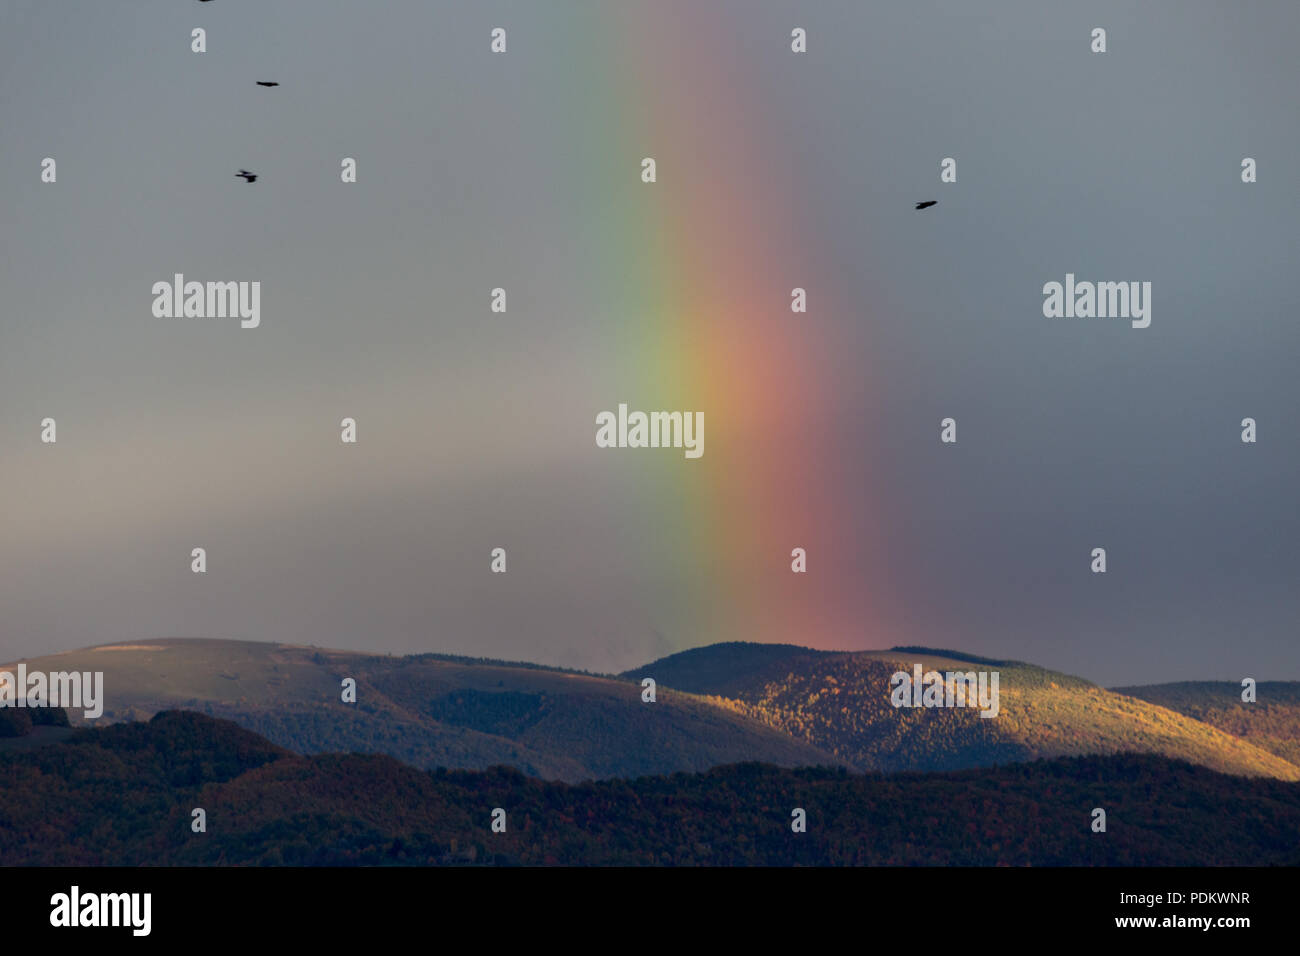 Bellissimo e surreale vista di parte di un arcobaleno su alcune colline con gli uccelli in volo Foto Stock